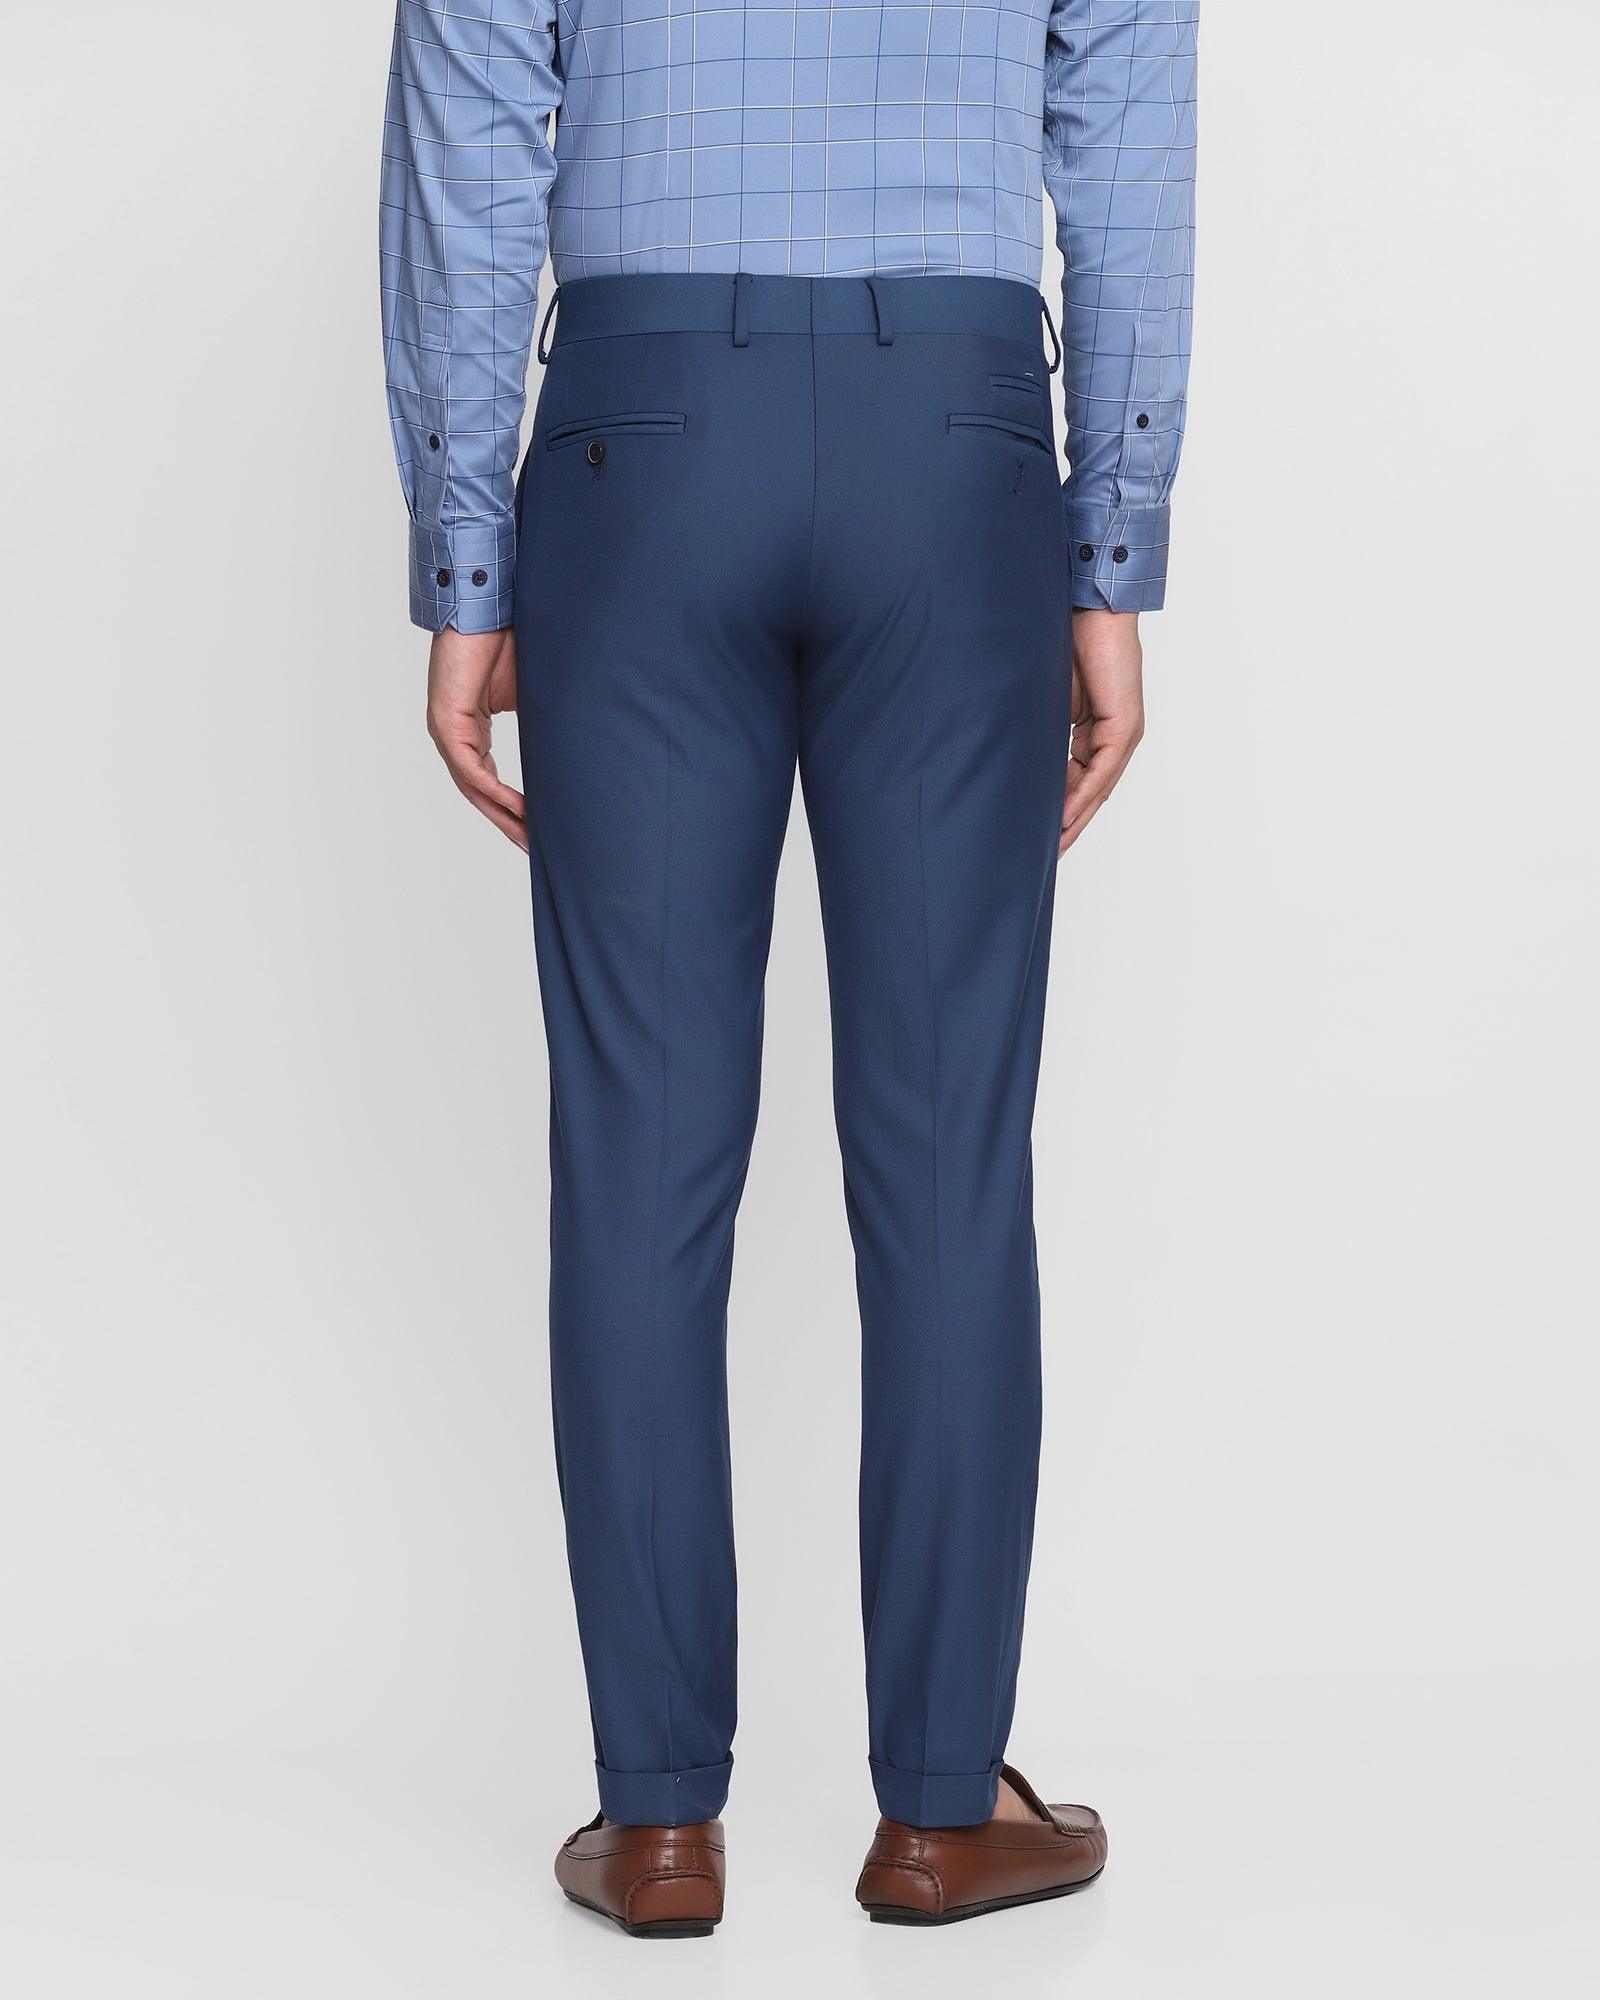 Super Slim Phoenix Formal Blue Solid Trouser - Saber